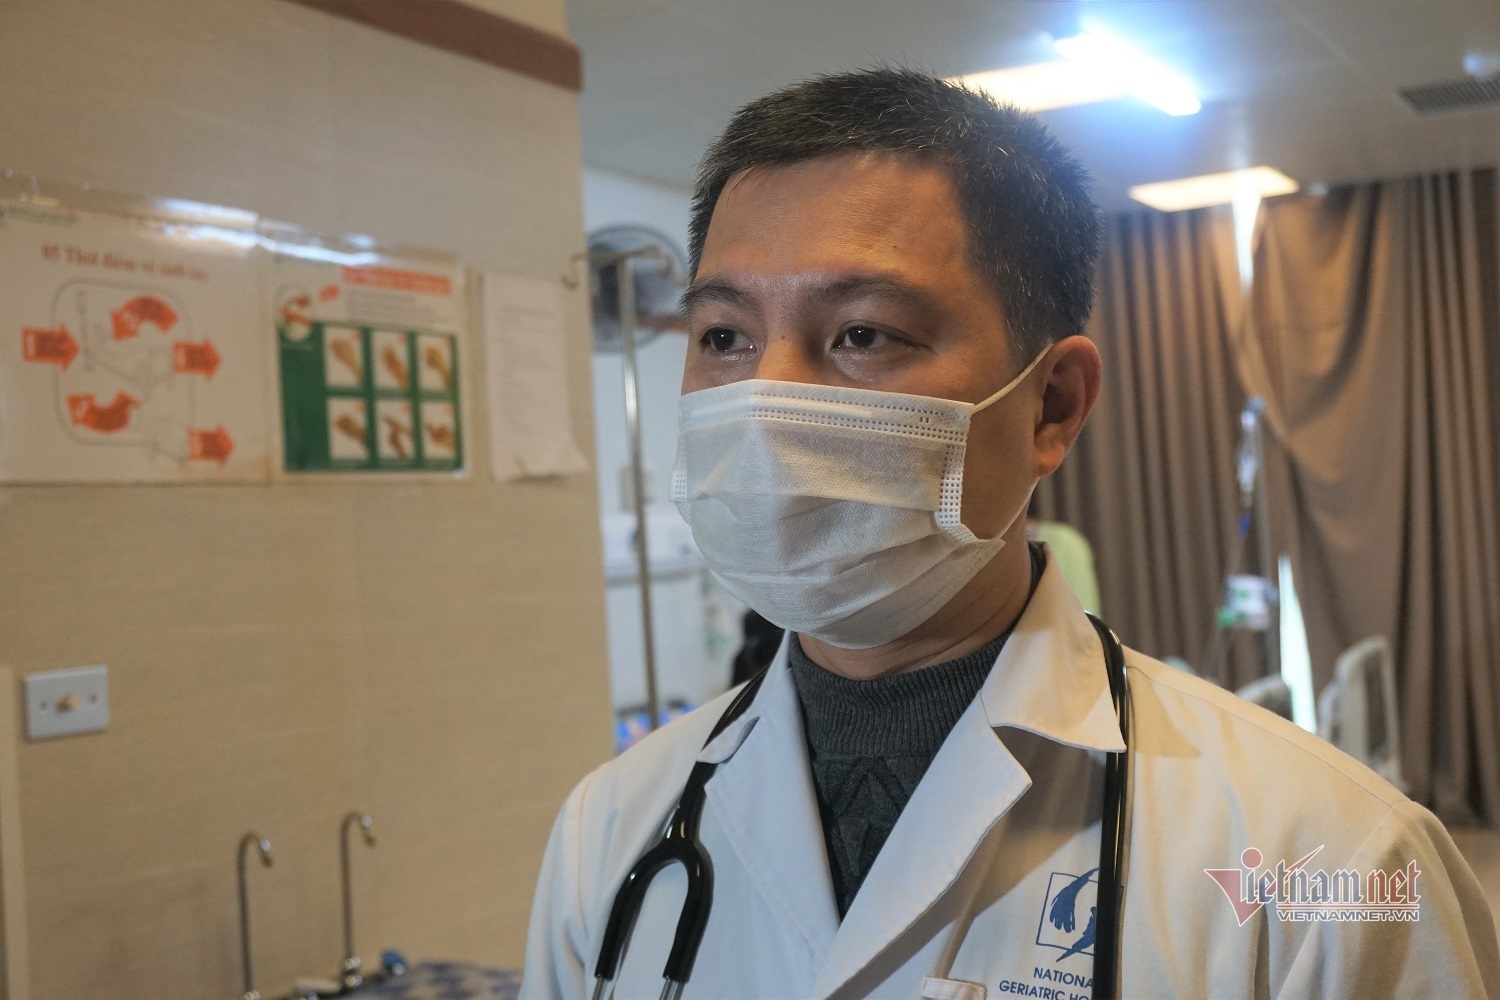  Bác sĩ Nguyễn Danh Cường, Phó trưởng khoa Cấp cứu và Đột quỵ, Bệnh viện Lão khoa Trung ương - Ảnh: N.Liên